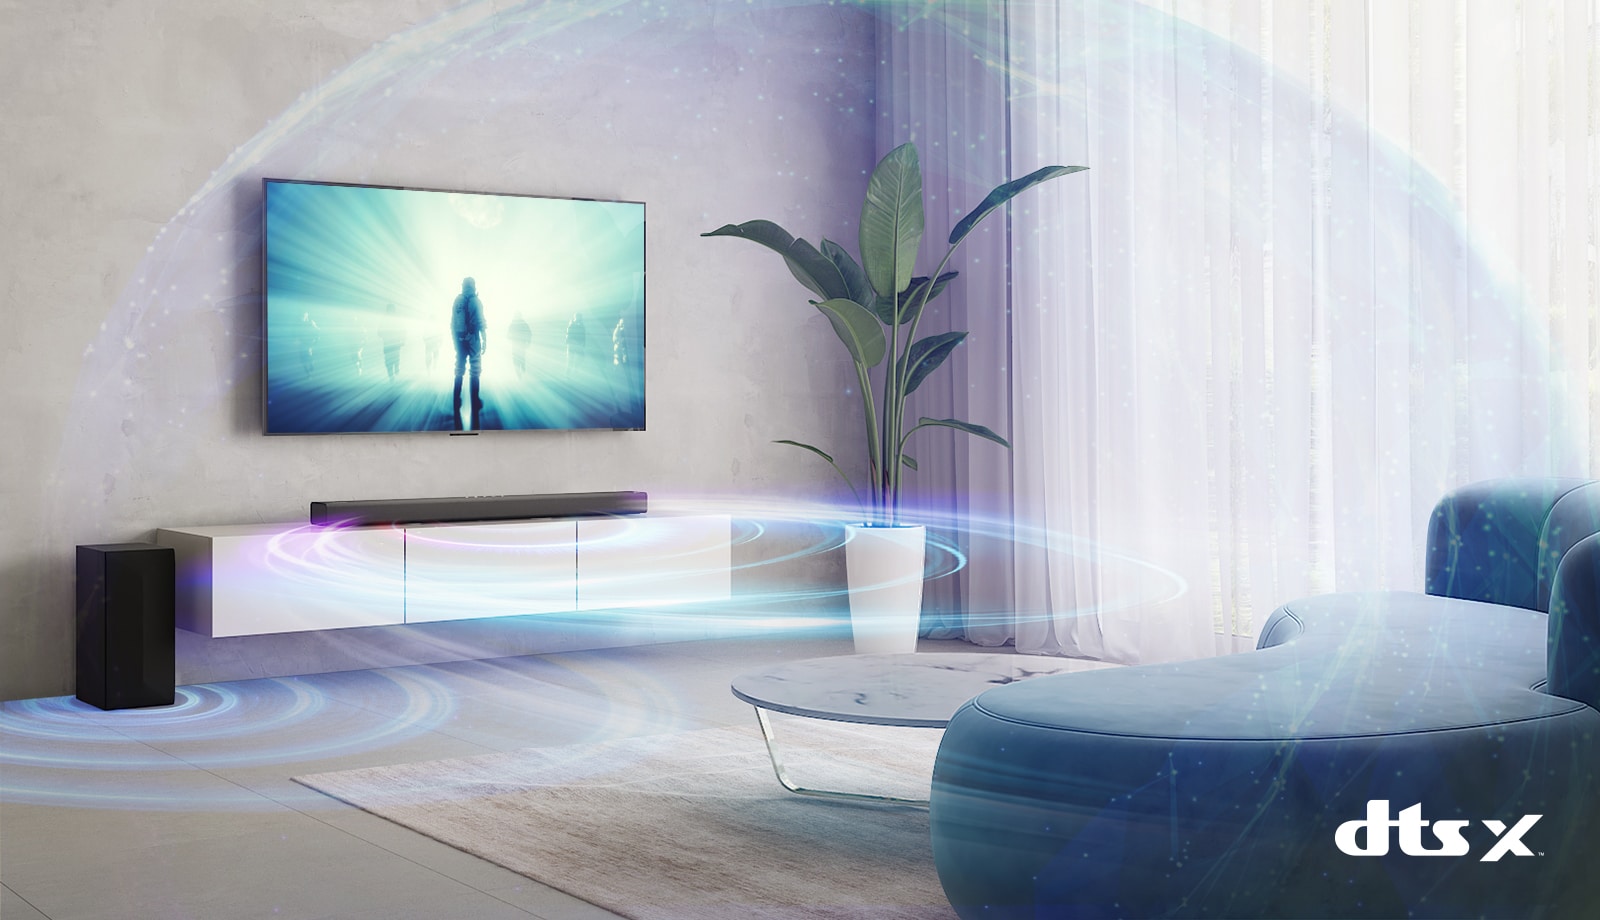 Az LG TV a nappali falára van felszerelve. A TV képernyőjén egy film látható. Az LG hangprojektor közvetlenül a TV alatt van egy bézs polcon, mellette balra pedig egy hátsó hangszóró. A kép jobb alsó részén látható a DTS Virtual:X logó.